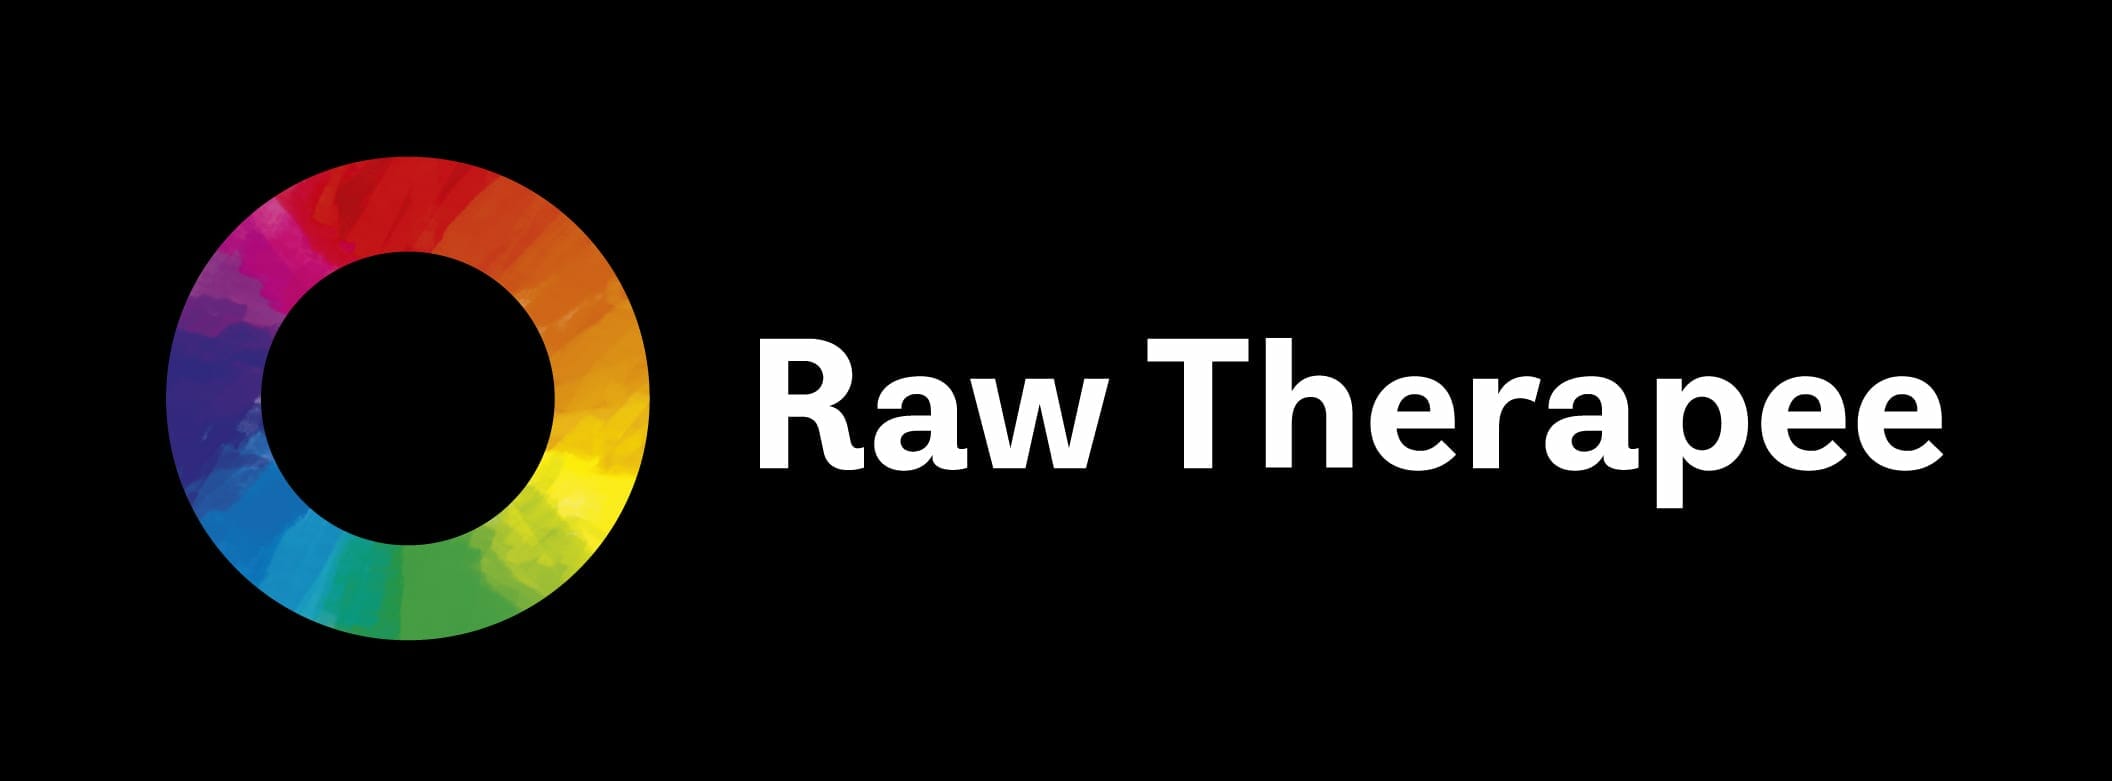 rawtherapee-logo